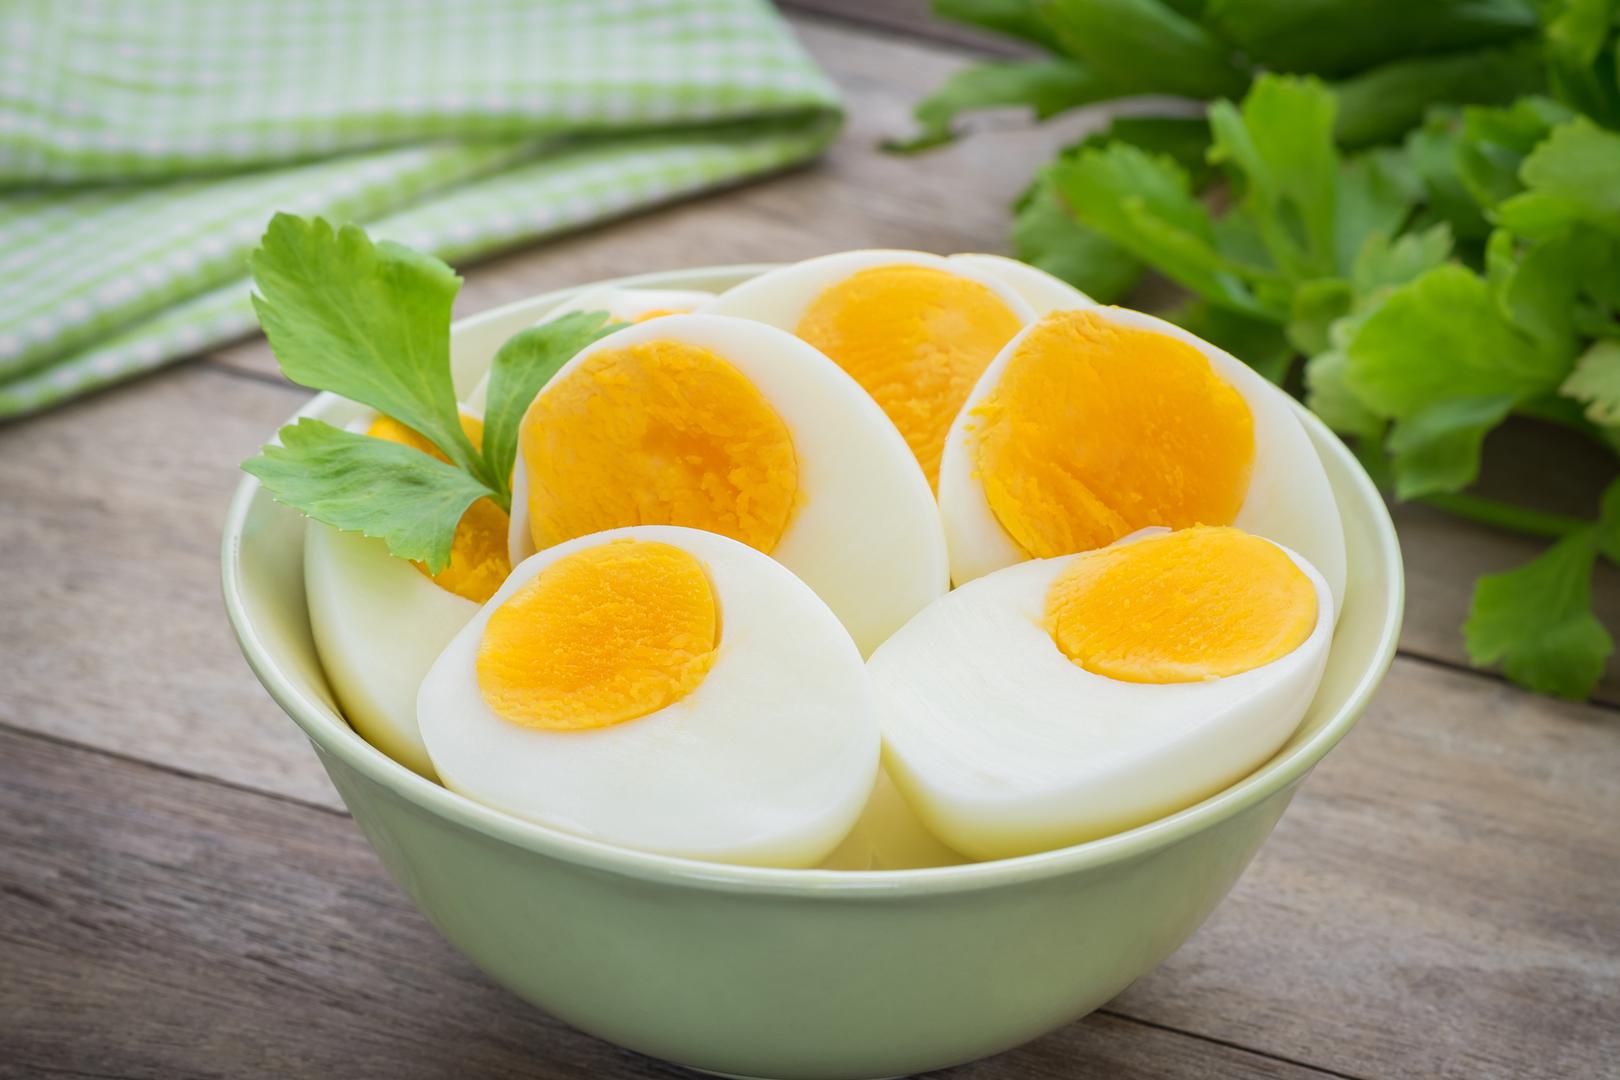 Jaja na omlet ili kuhana također se ne smiju podgrijavati i jesti i mogu biti vrlo toksična nakon podgrijavanja.